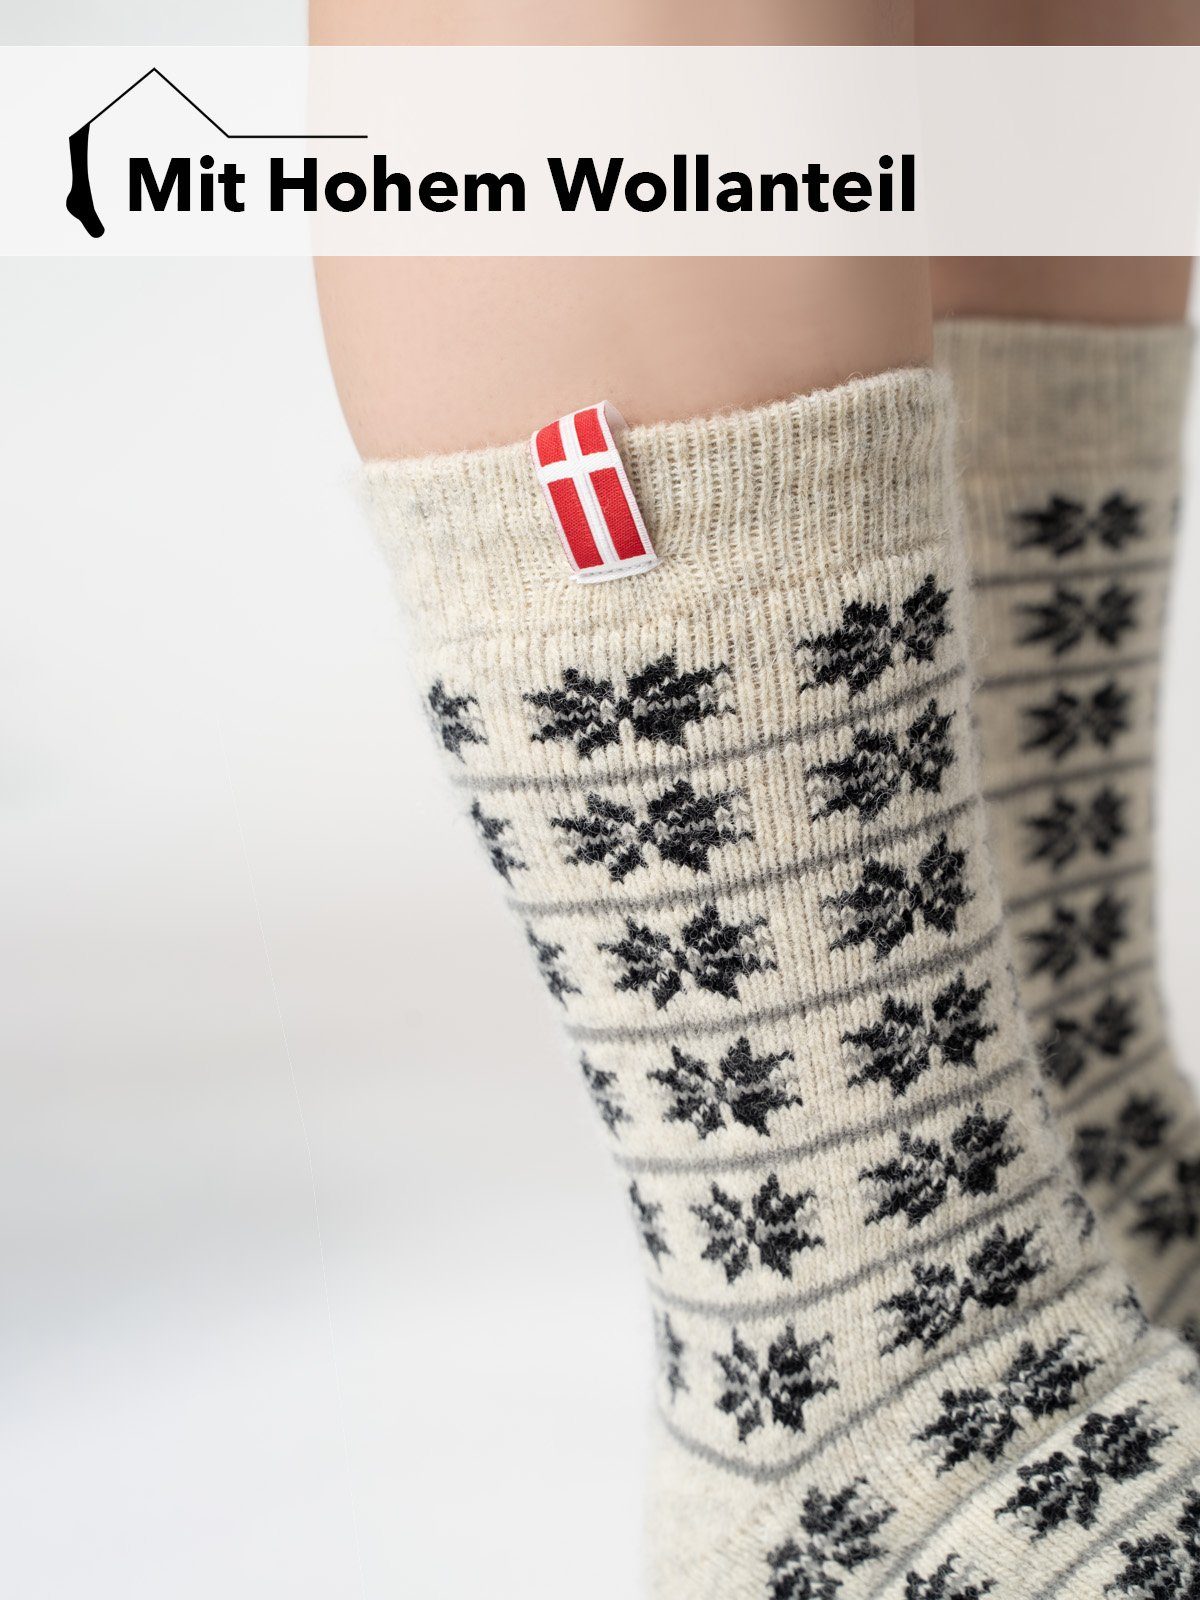 80% HomeOfSocks dicke Wollsocke Anthrazit Design Skandinavische Aus Wolle Dänemark und Socken "Dänemark" Kuschelsocken mit Norwegersocken Nordic hohem Wollanteil strapazierfähige